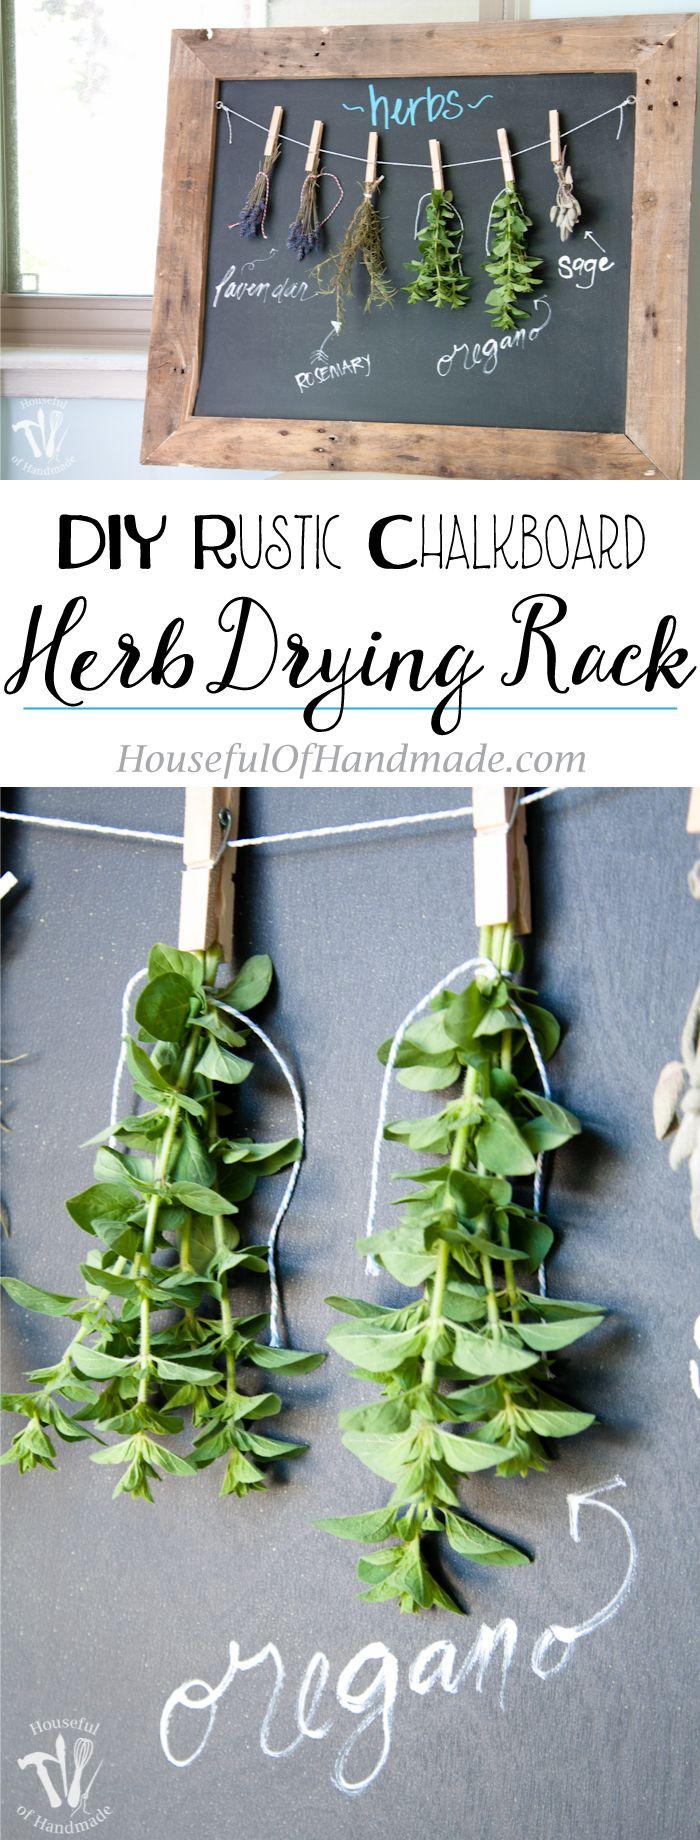 Hochzeit - DIY Rustic Chalkboard Herb Drying Rack